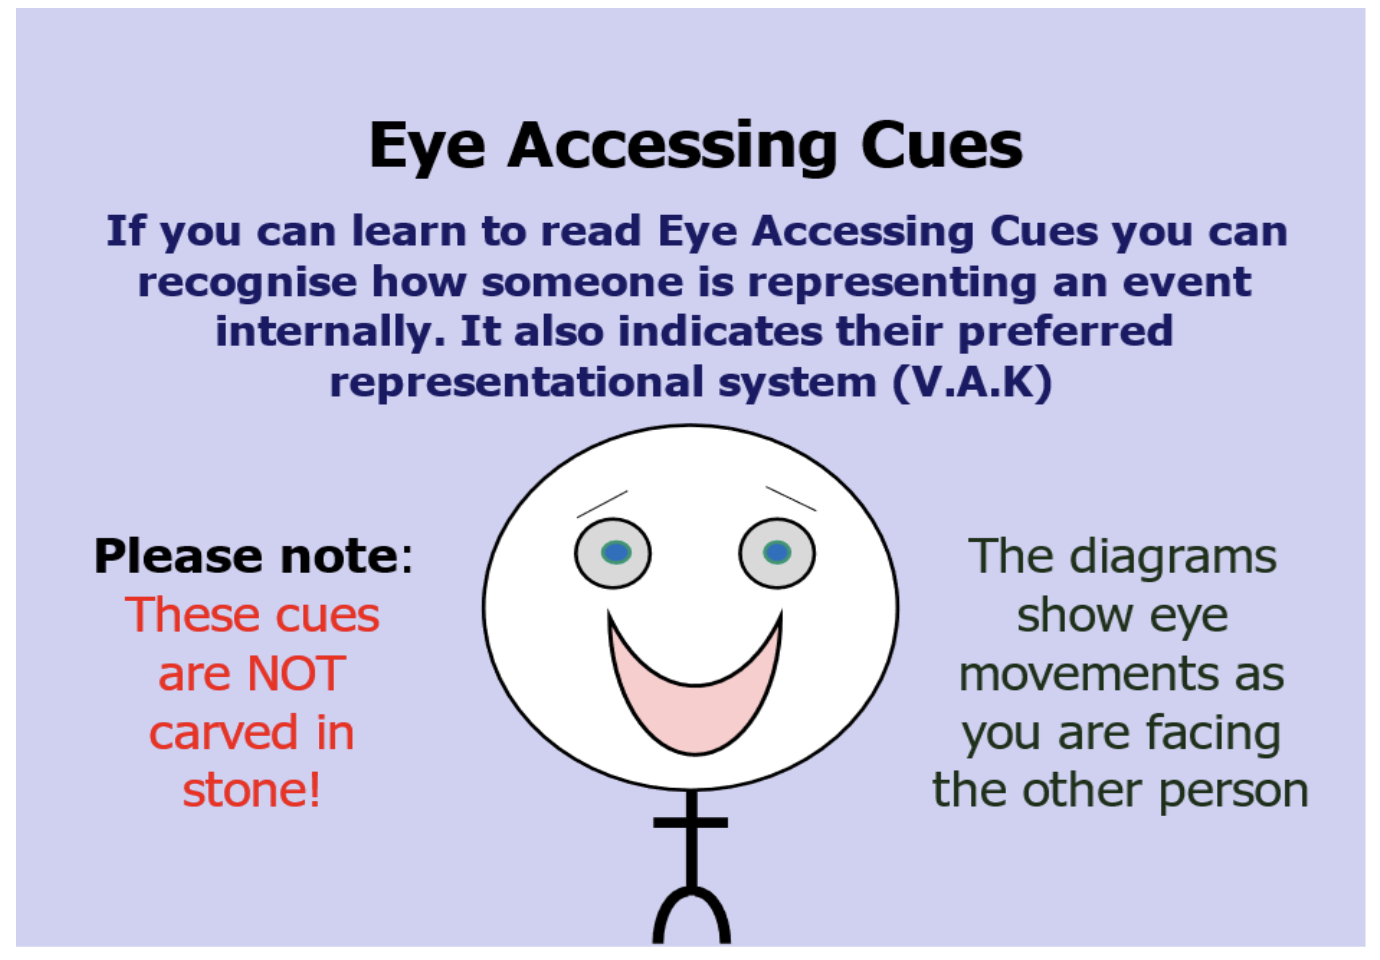 Eye Accessing Cues